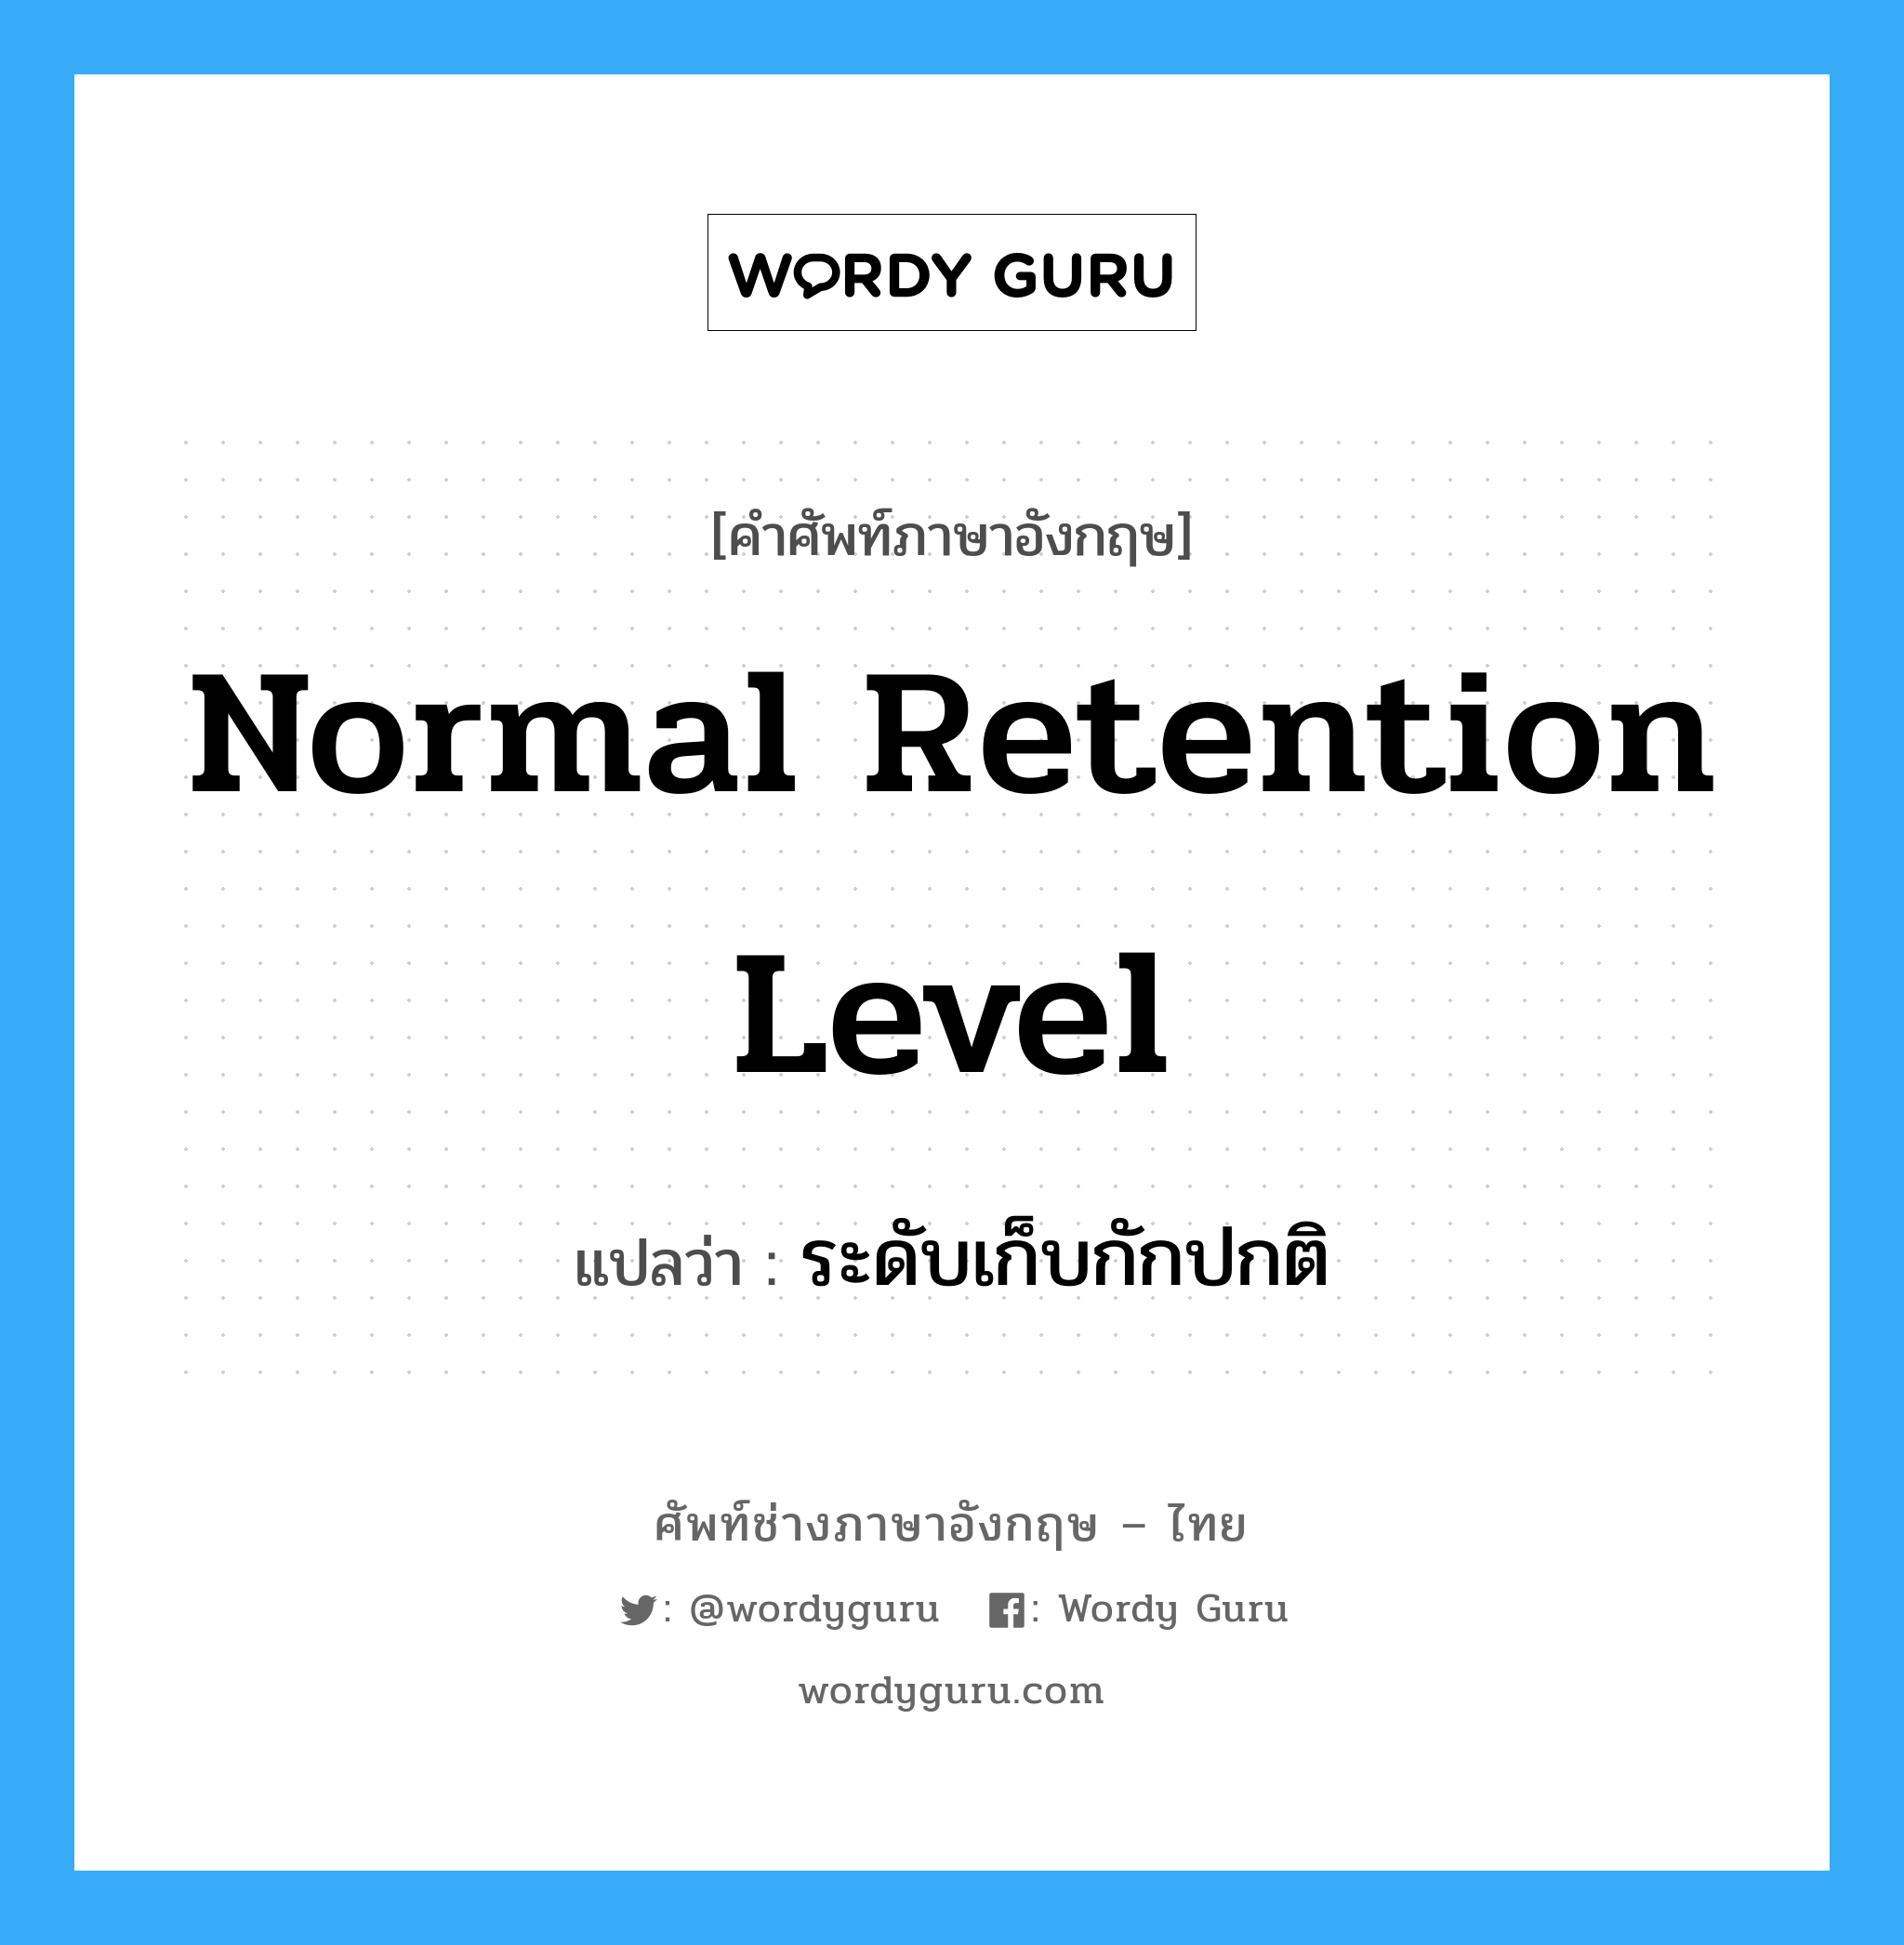 ระดับเก็บกักปกติ ภาษาอังกฤษ?, คำศัพท์ช่างภาษาอังกฤษ - ไทย ระดับเก็บกักปกติ คำศัพท์ภาษาอังกฤษ ระดับเก็บกักปกติ แปลว่า normal retention level